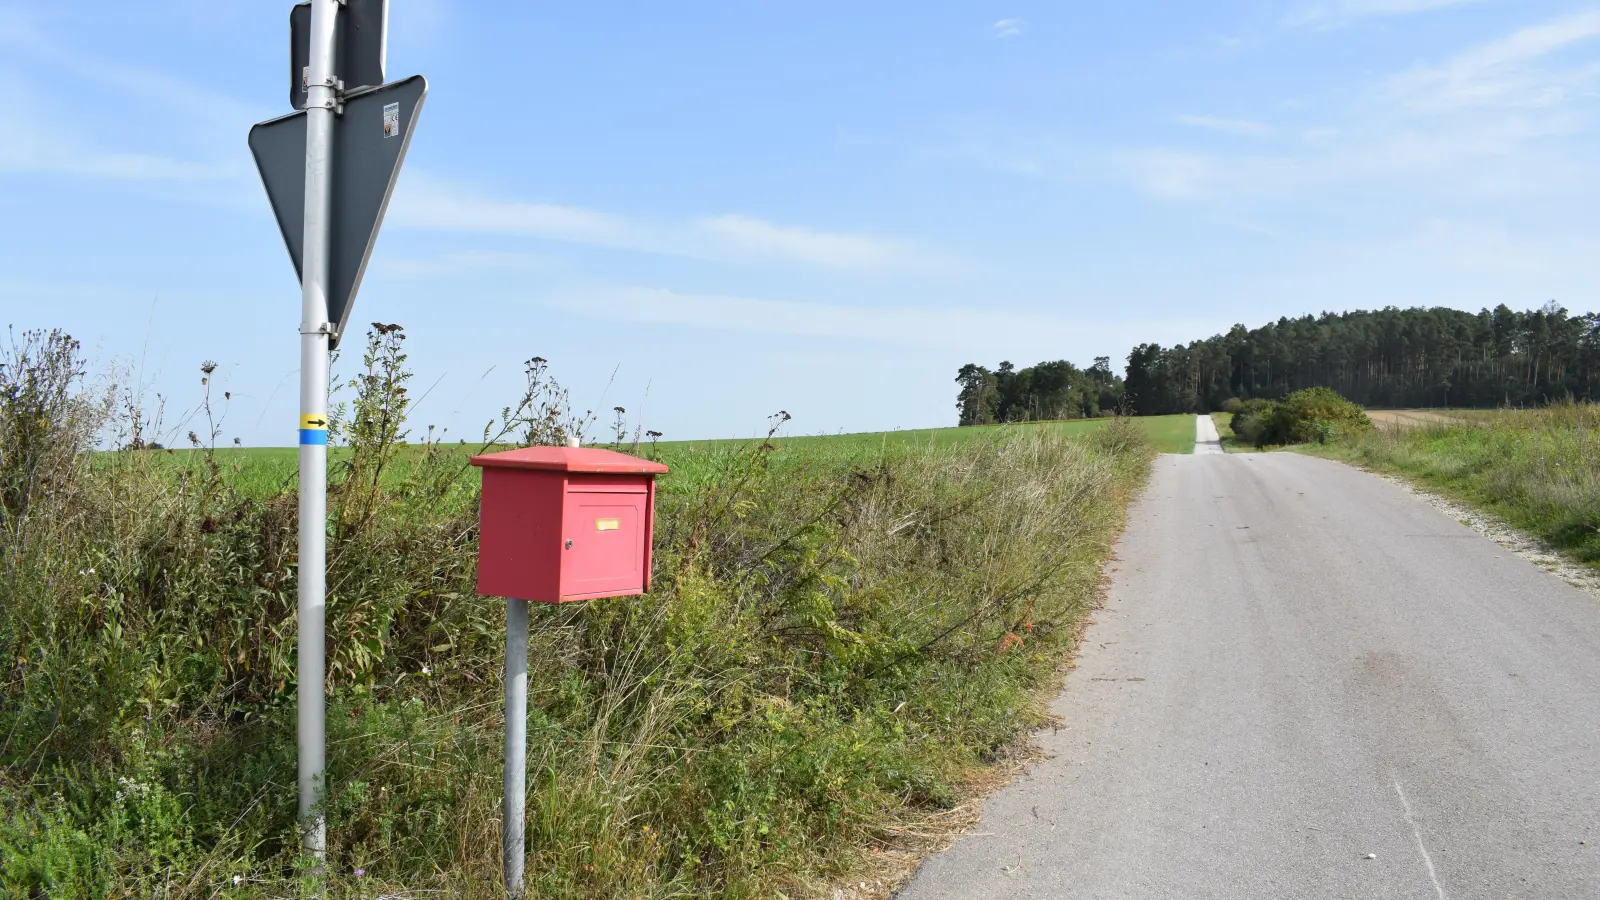 <b>Ein roter Briefkasten</b> allein auf weiter Flur: Er befindet sich an einer Kreisstraße im nördlichen Landkreis Aichach-Friedberg, doch wo genau? Und zu wem gehört er? Die Auflösung gibt es bei unserem nächsten Rätselbild auf der Serviceseite. (Foto: Thomas Winter)